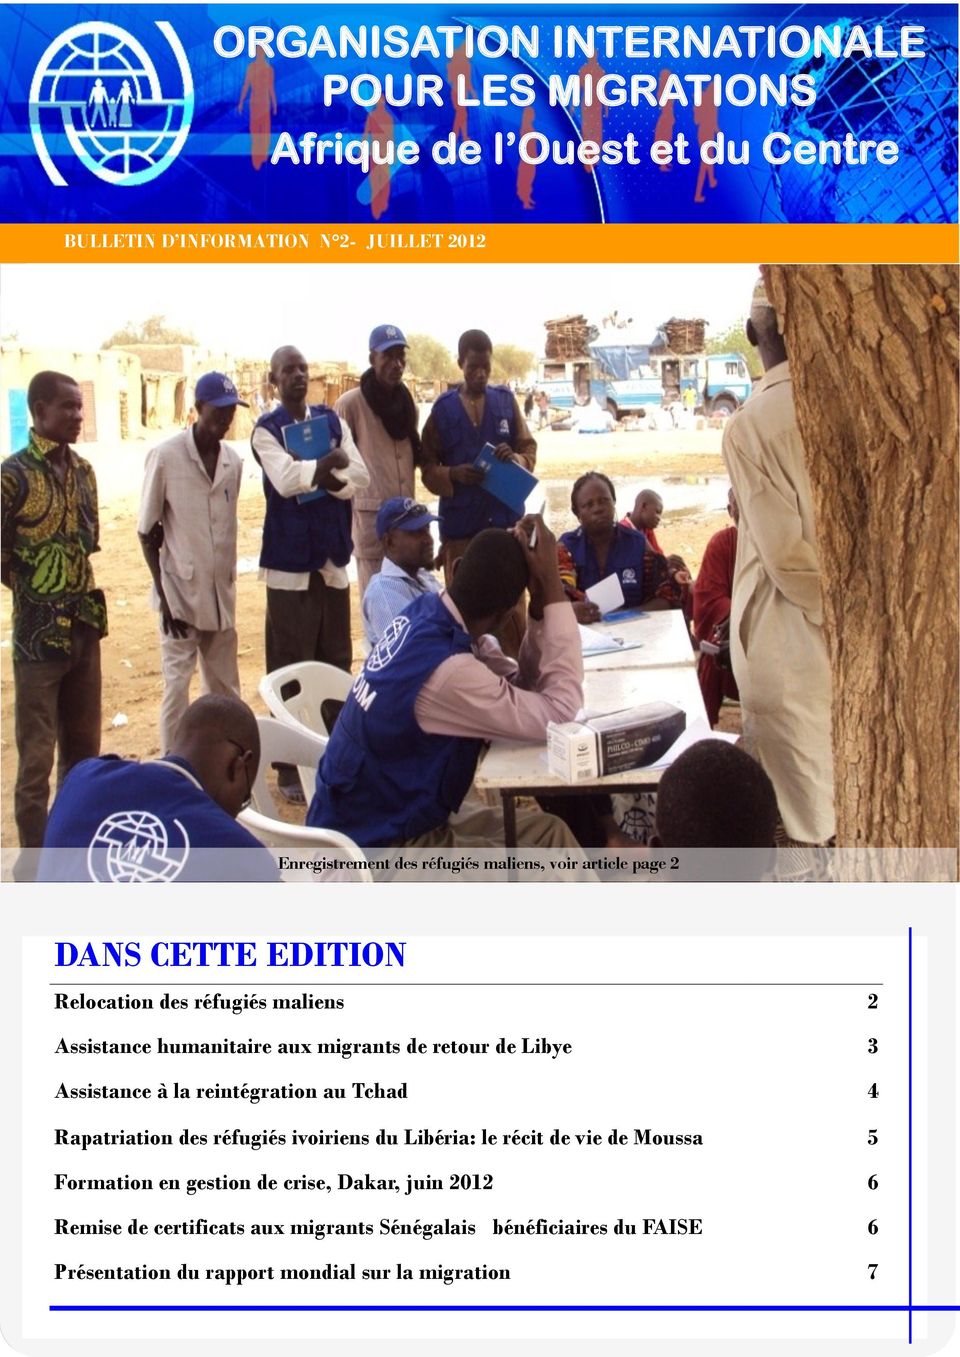 Libye 3 Assistance à la reintégration au Tchad 4 Rapatriation des réfugiés ivoiriens du Libéria: le récit de vie de Moussa 5 Formation en